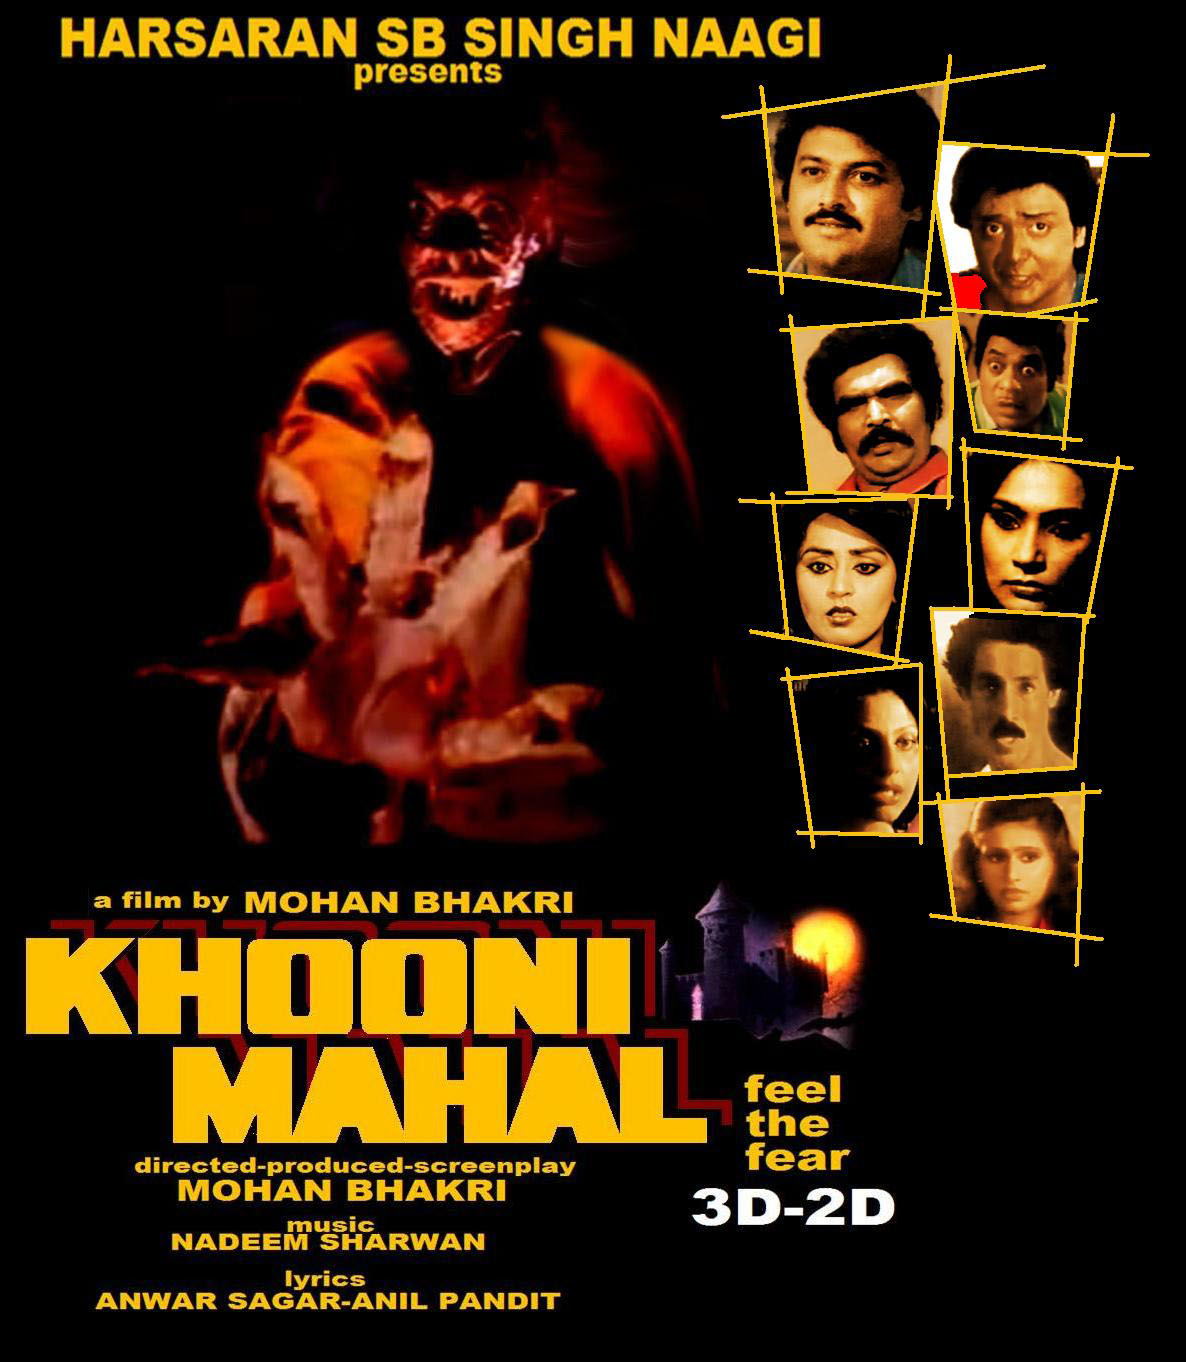 Khooni Mahal (1987) Screenshot 1 